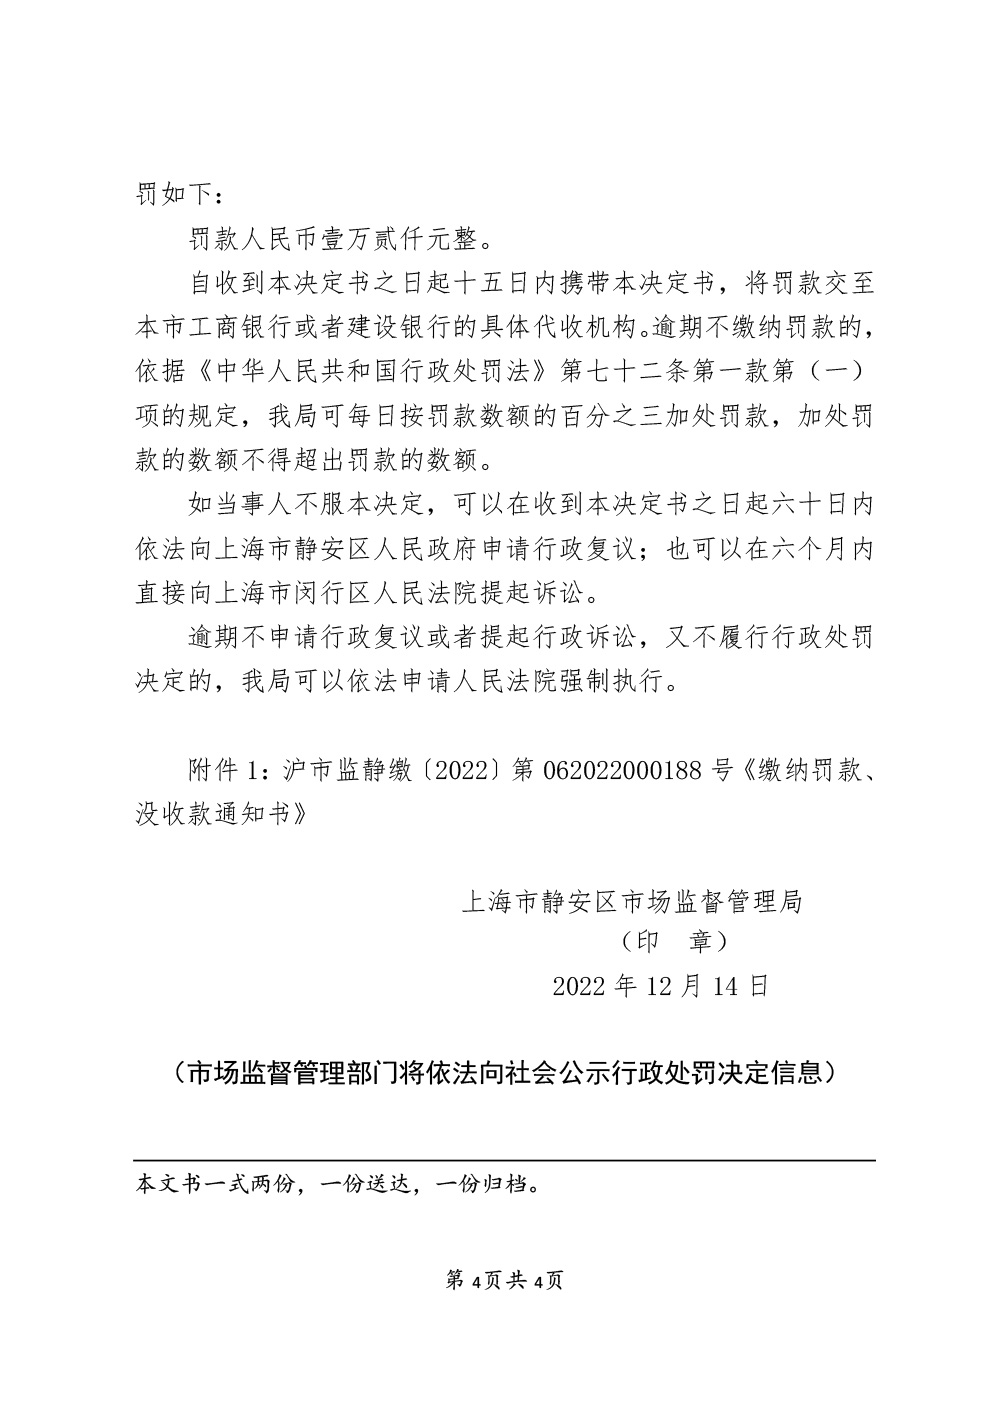 上海玫瑰医疗美容医院有限公司涉嫌经营标签不符合规定的医疗器械案